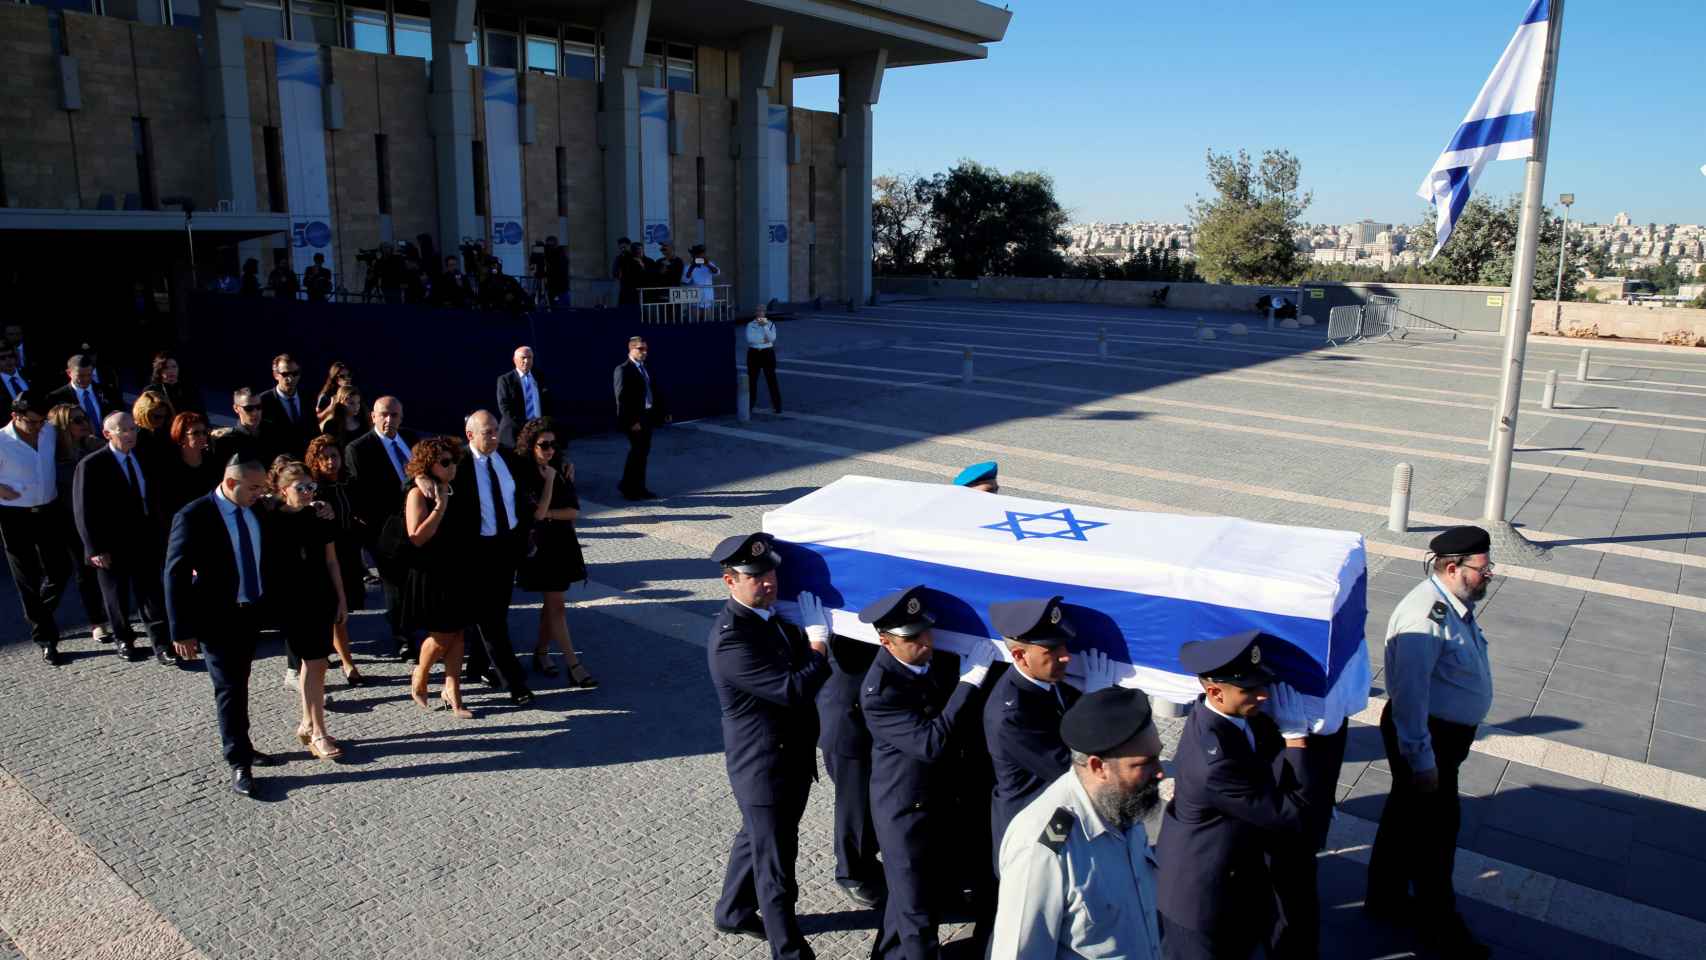 Familiares de Simón Peres flanquean su féretro durante una ceremonia en la Knesset, el Parlamento israelí, antes de su traslado al cementerio del  Monte Herzl, donde se han reunido los líderes locales y mundiales para rendir homenaje al último fundador de Israel. Imagen: Ammar Awad/ Reuters